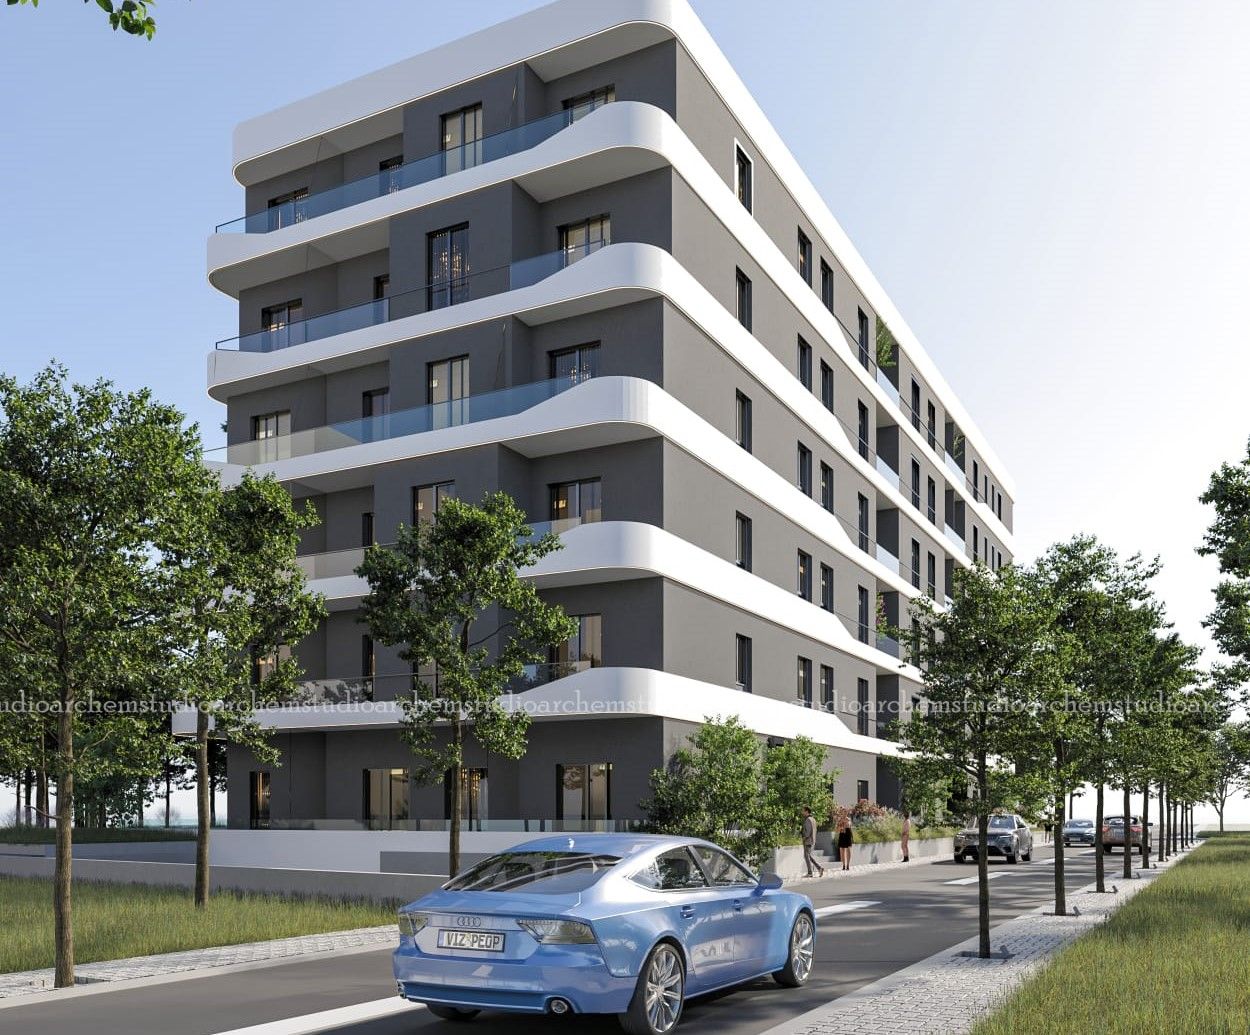 Eladó Lakás Golem Durres-ben Albániában Egy építés Alatt álló új épületben, Közel A Strandhoz